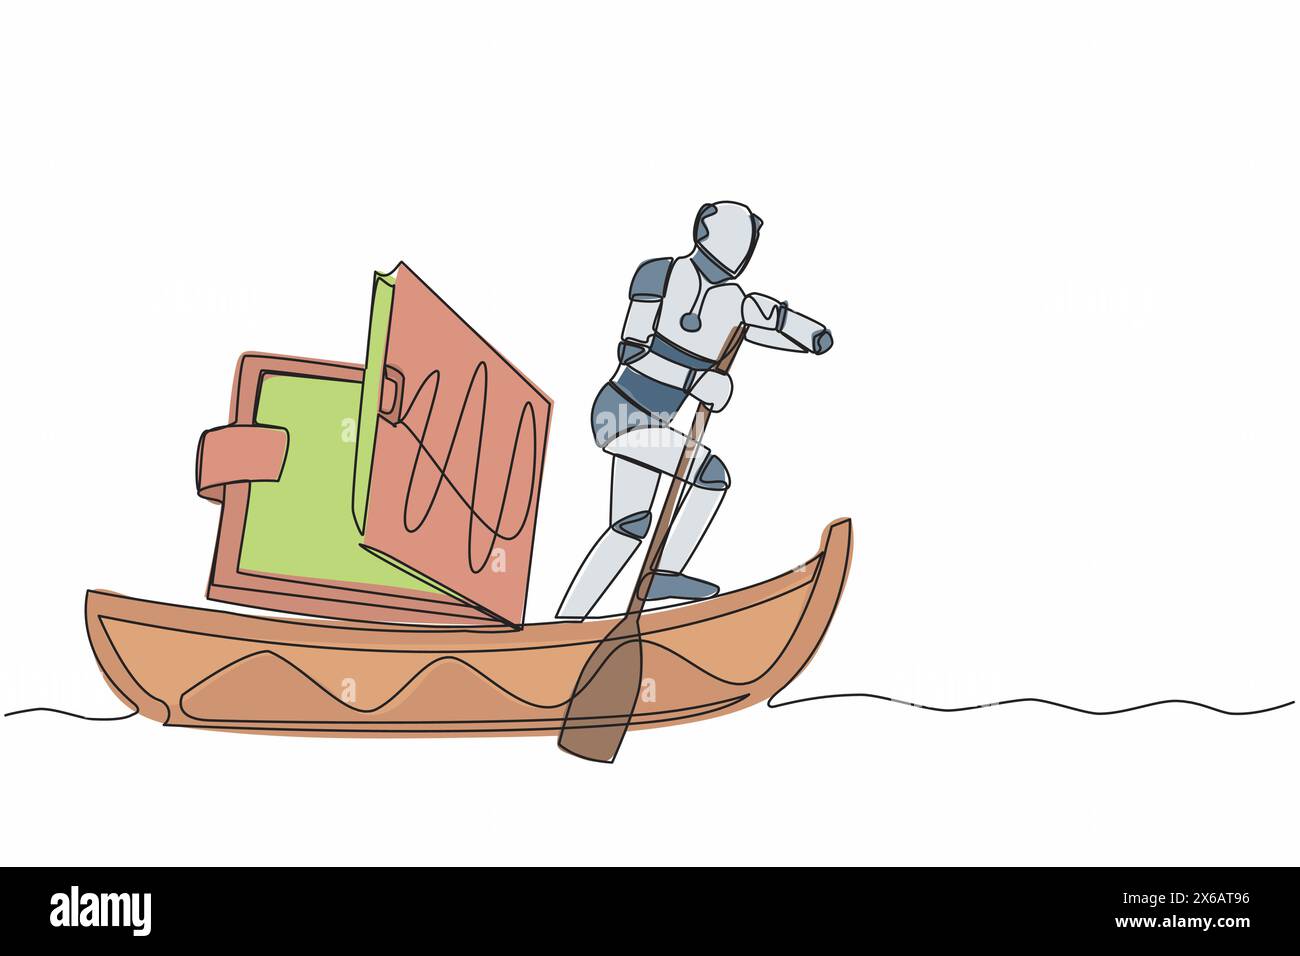 Robot de dessin continu d'une ligne naviguant loin sur le bateau avec portefeuille. Problème dans l'entreprise technologique en raison de la crise économique. Organisme cybernétique robot humanoïde Illustration de Vecteur